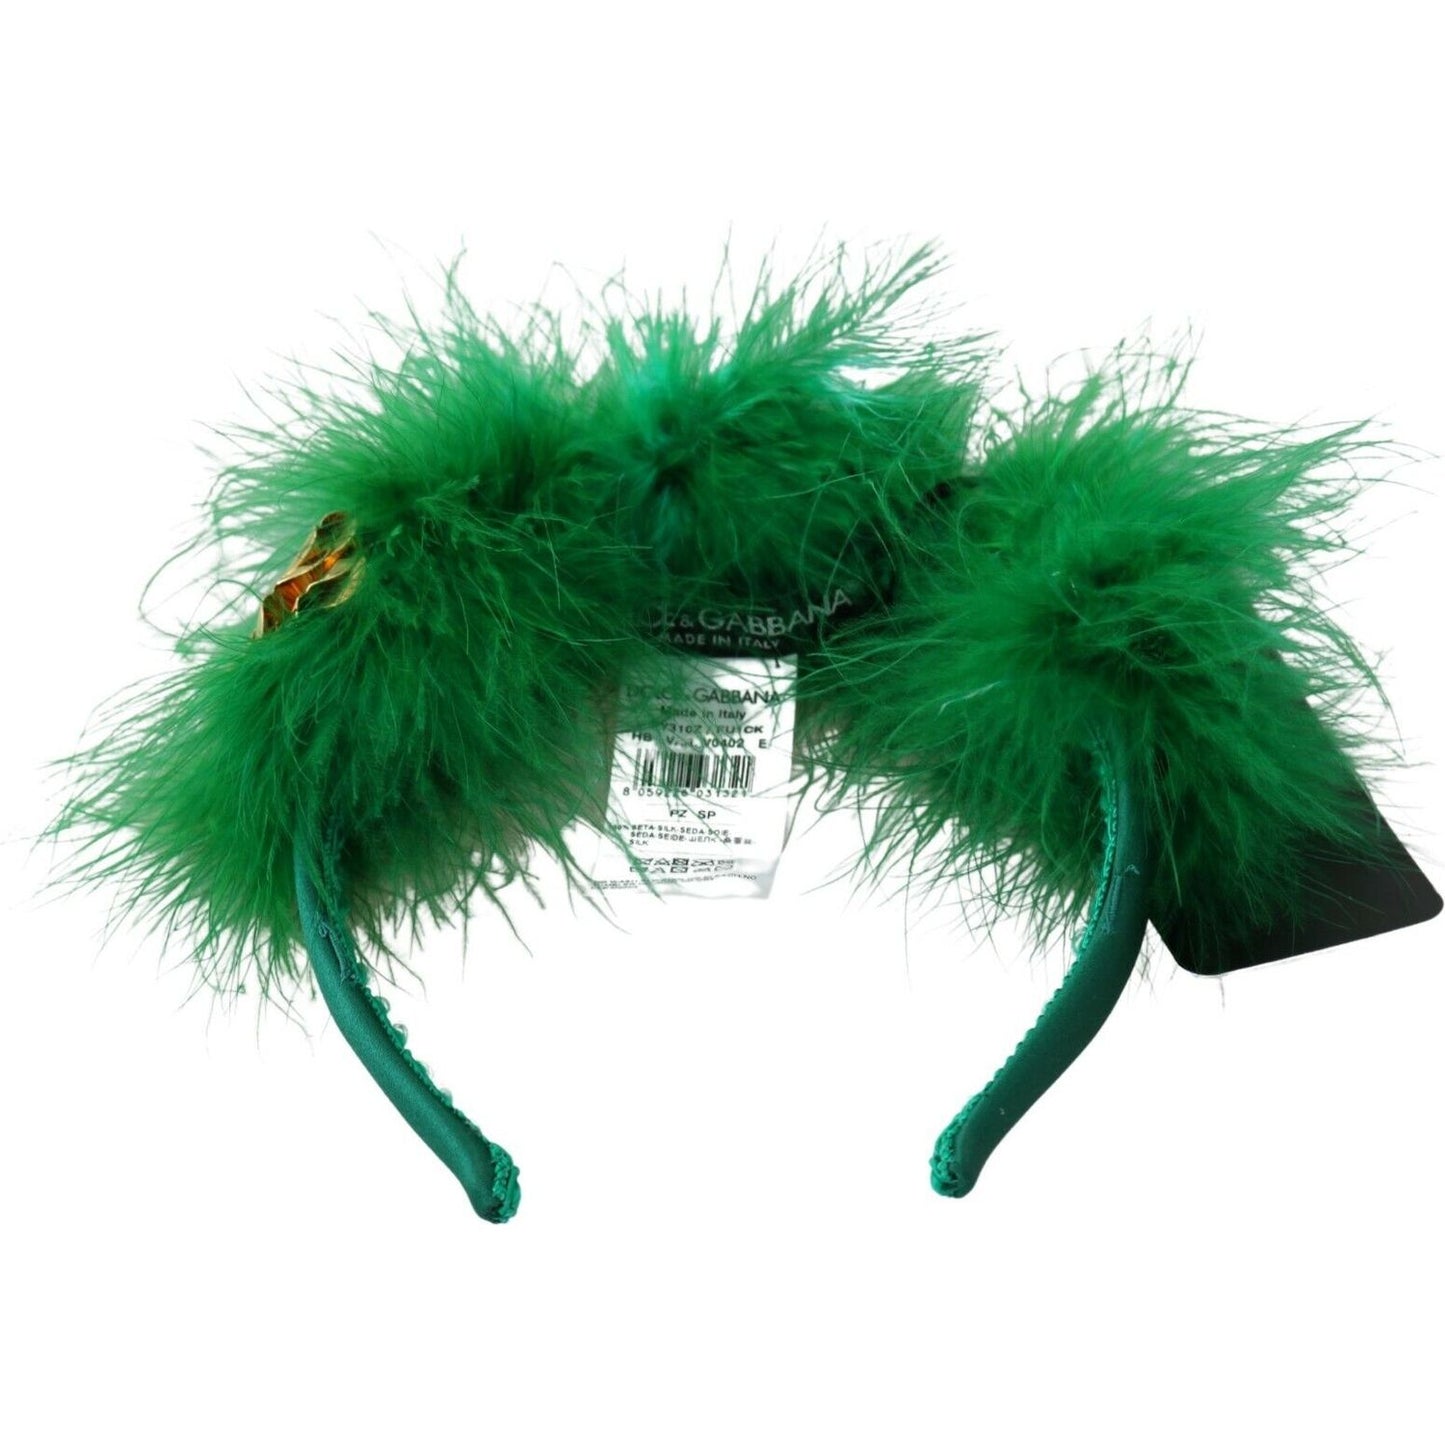 Dolce & Gabbana Elegant Emerald Silk Floral Headband green-silk-fur-crystal-flowers-tiara-headband s-l1600-14-2b145a43-3fd.jpg